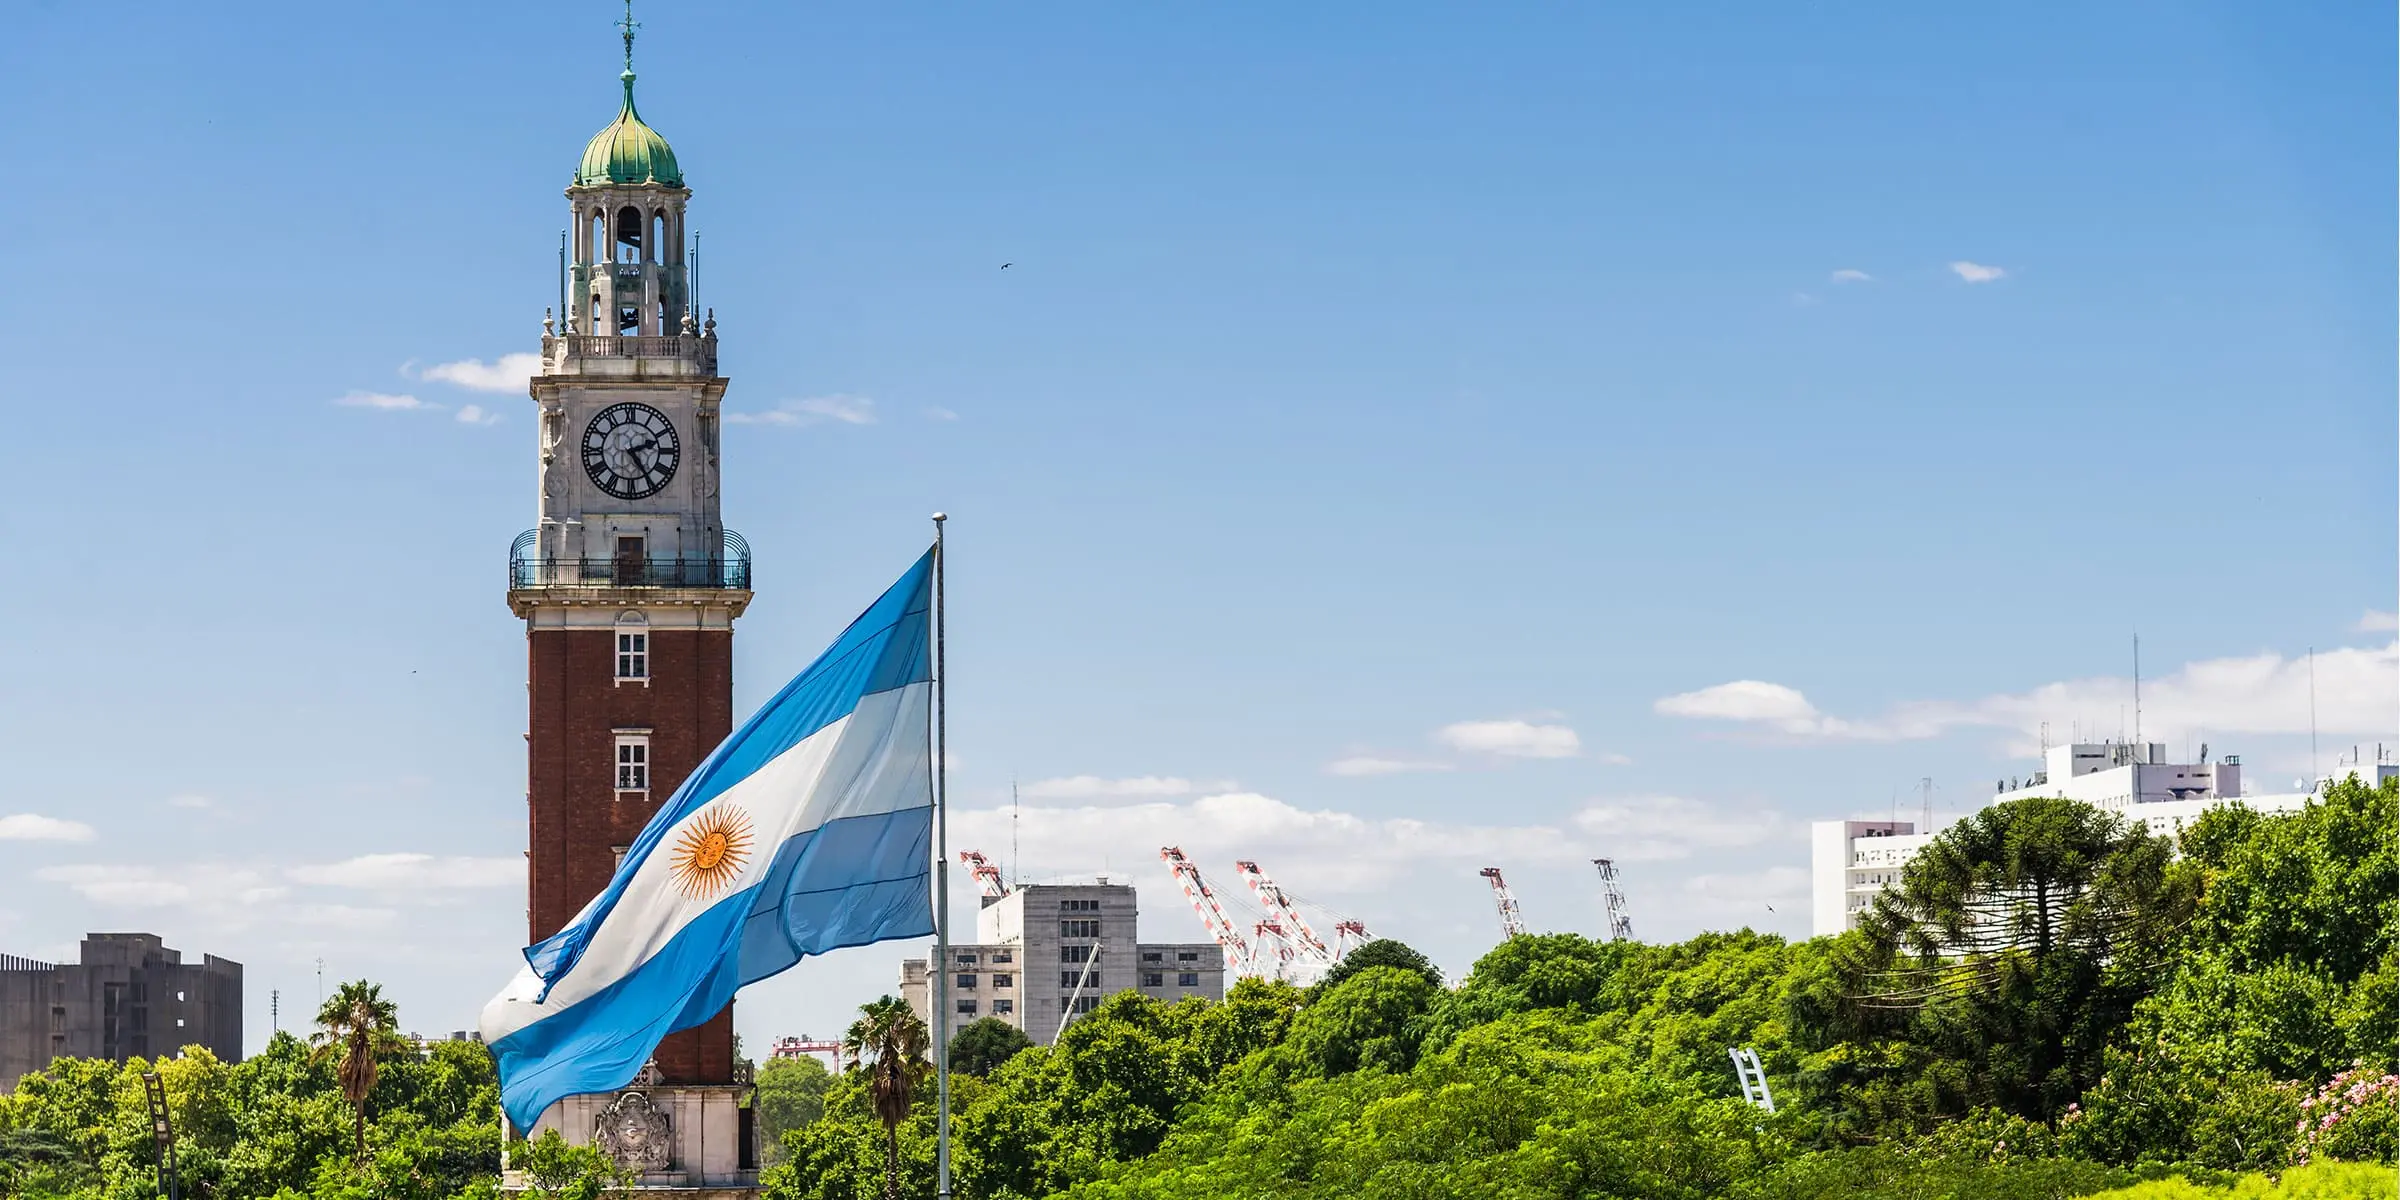 ciudades inteligentes y sustentables en argentina 2035 - Cuál es la ciudad más inteligente de América Latina